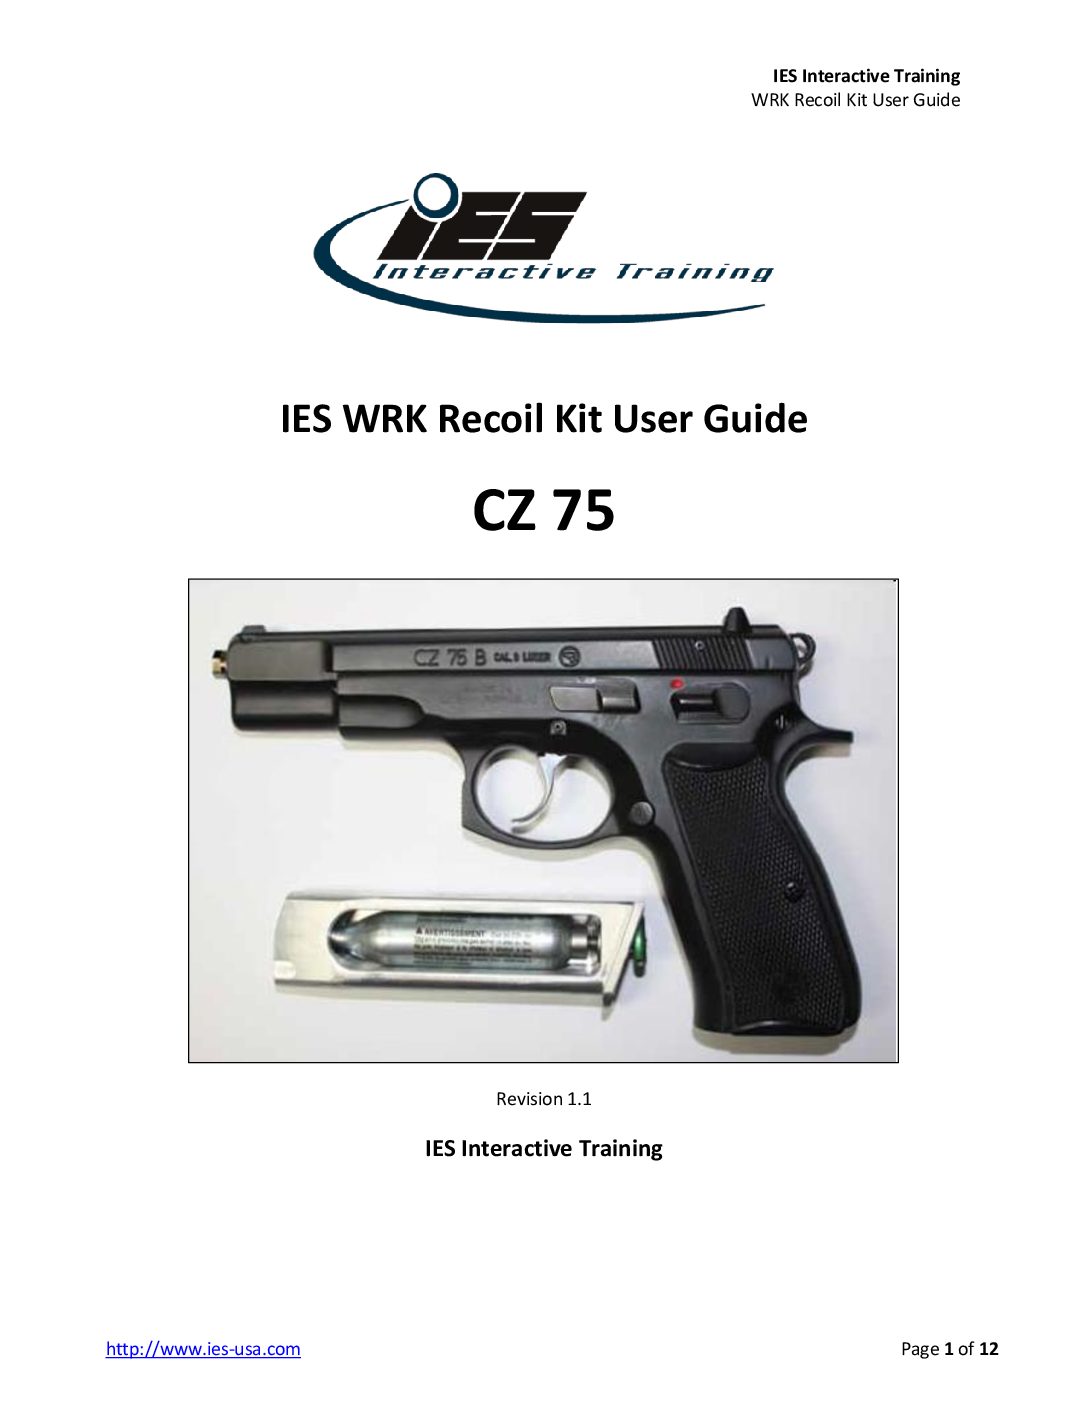 CZ 75 WRK Recoil Kit User Guide